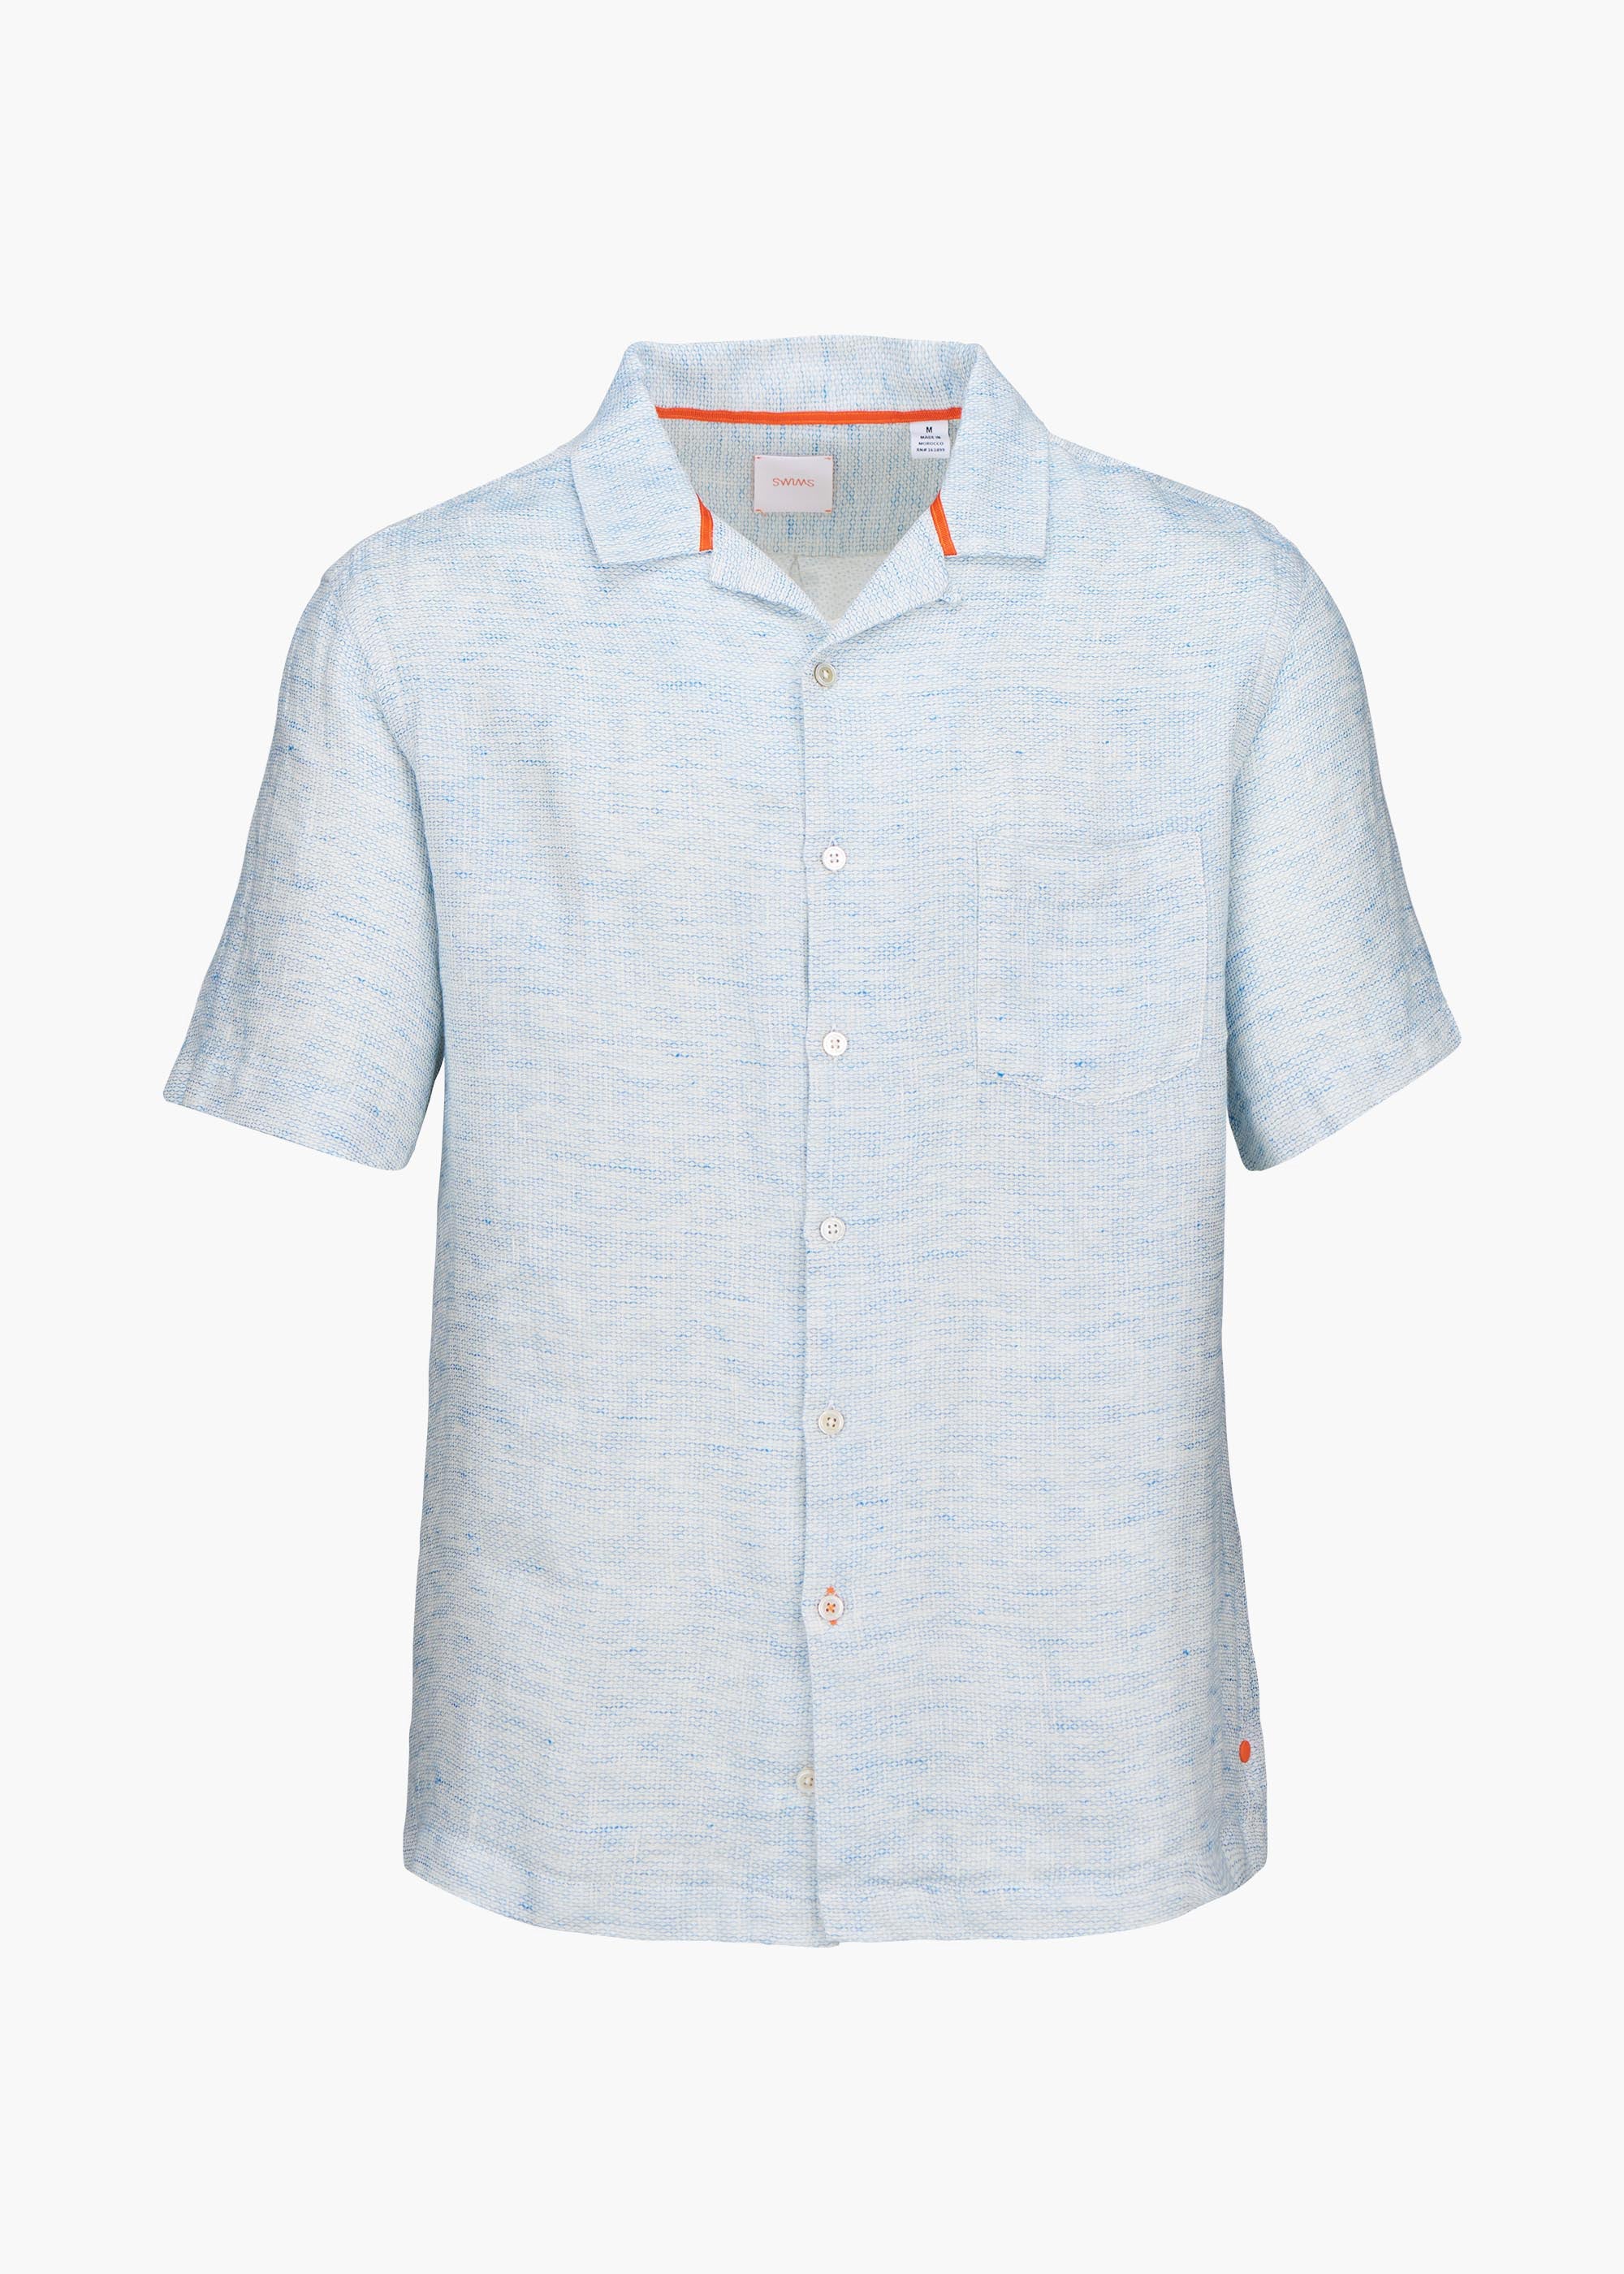 Capri Linen Shirt in Blue Skies for Mens, SWIMS